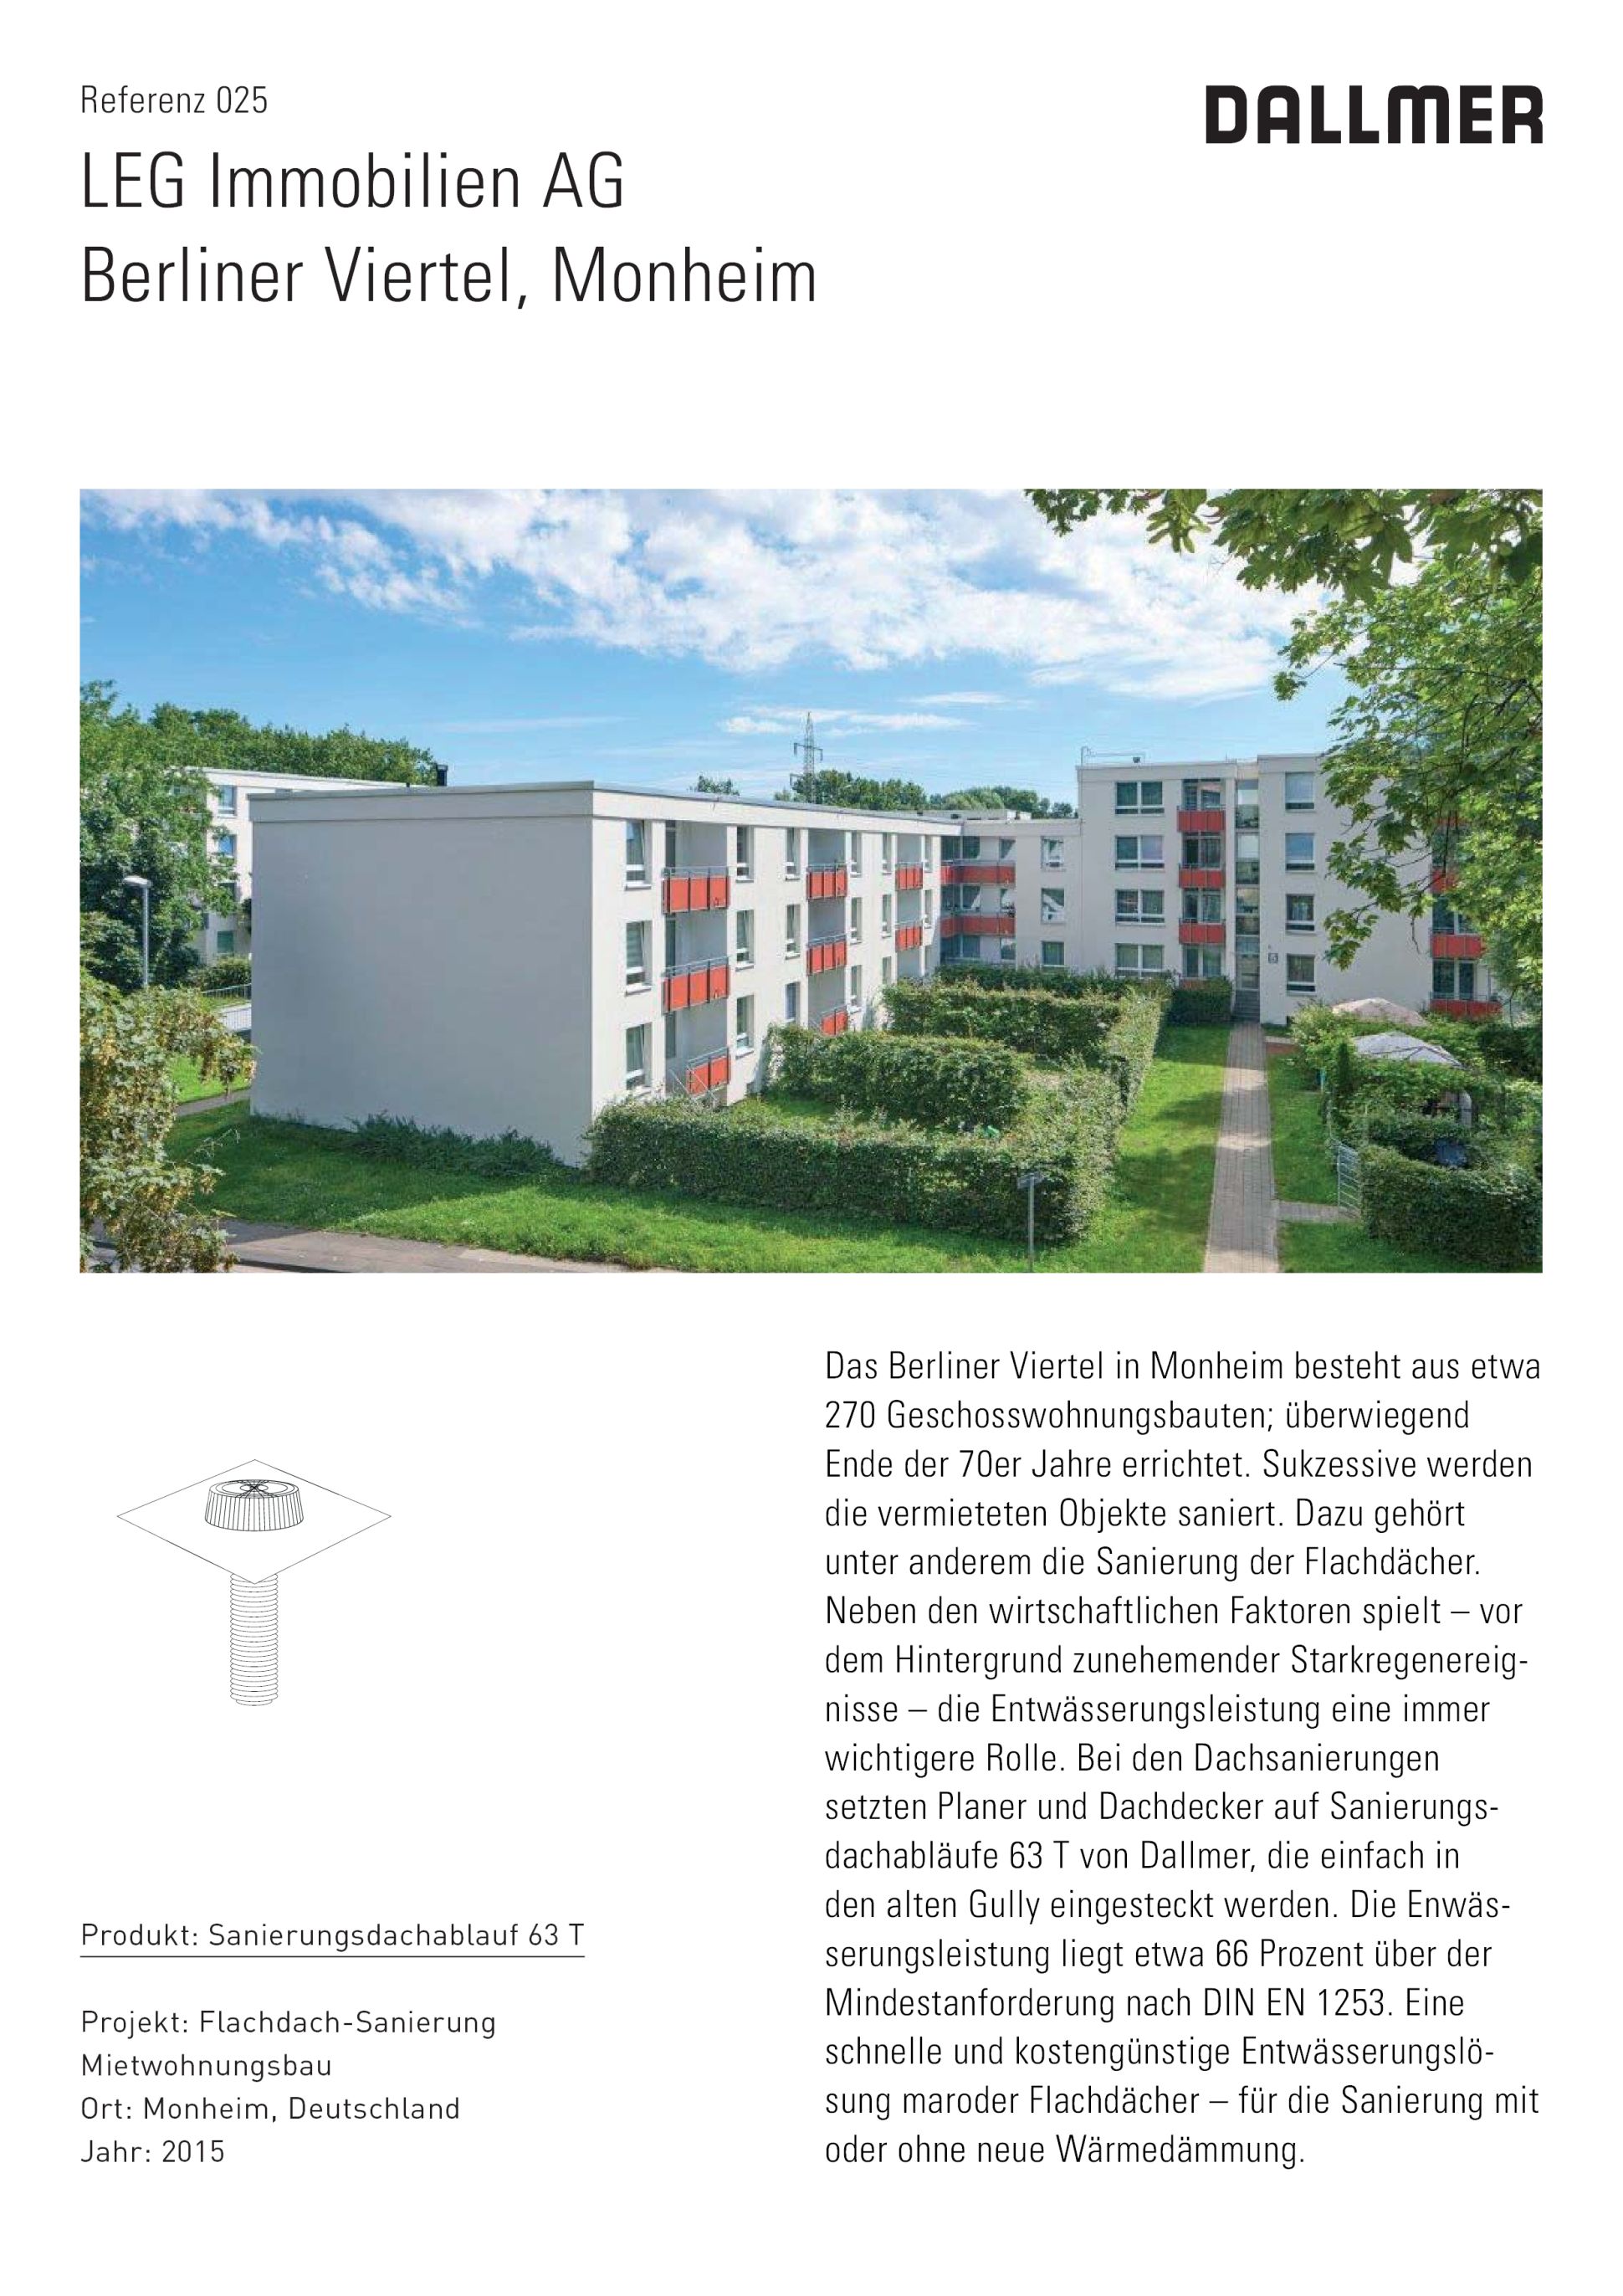 Referenz 025 LEG Immobilien Berliner Viertel Monheim